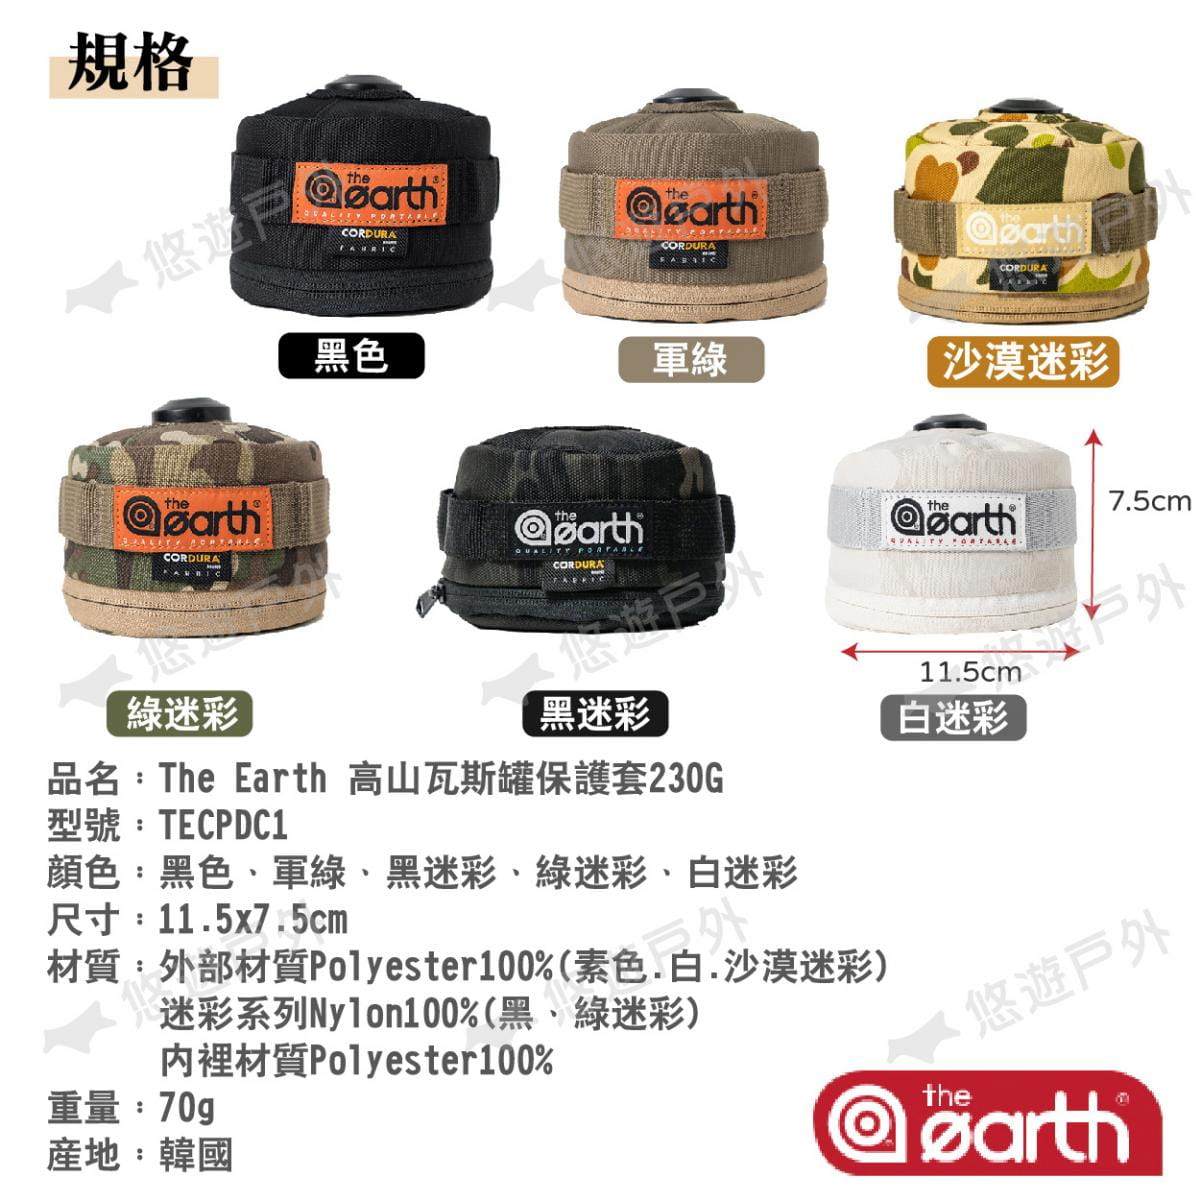 【the earth】高山瓦斯罐保護套_230G (悠遊戶外) 5